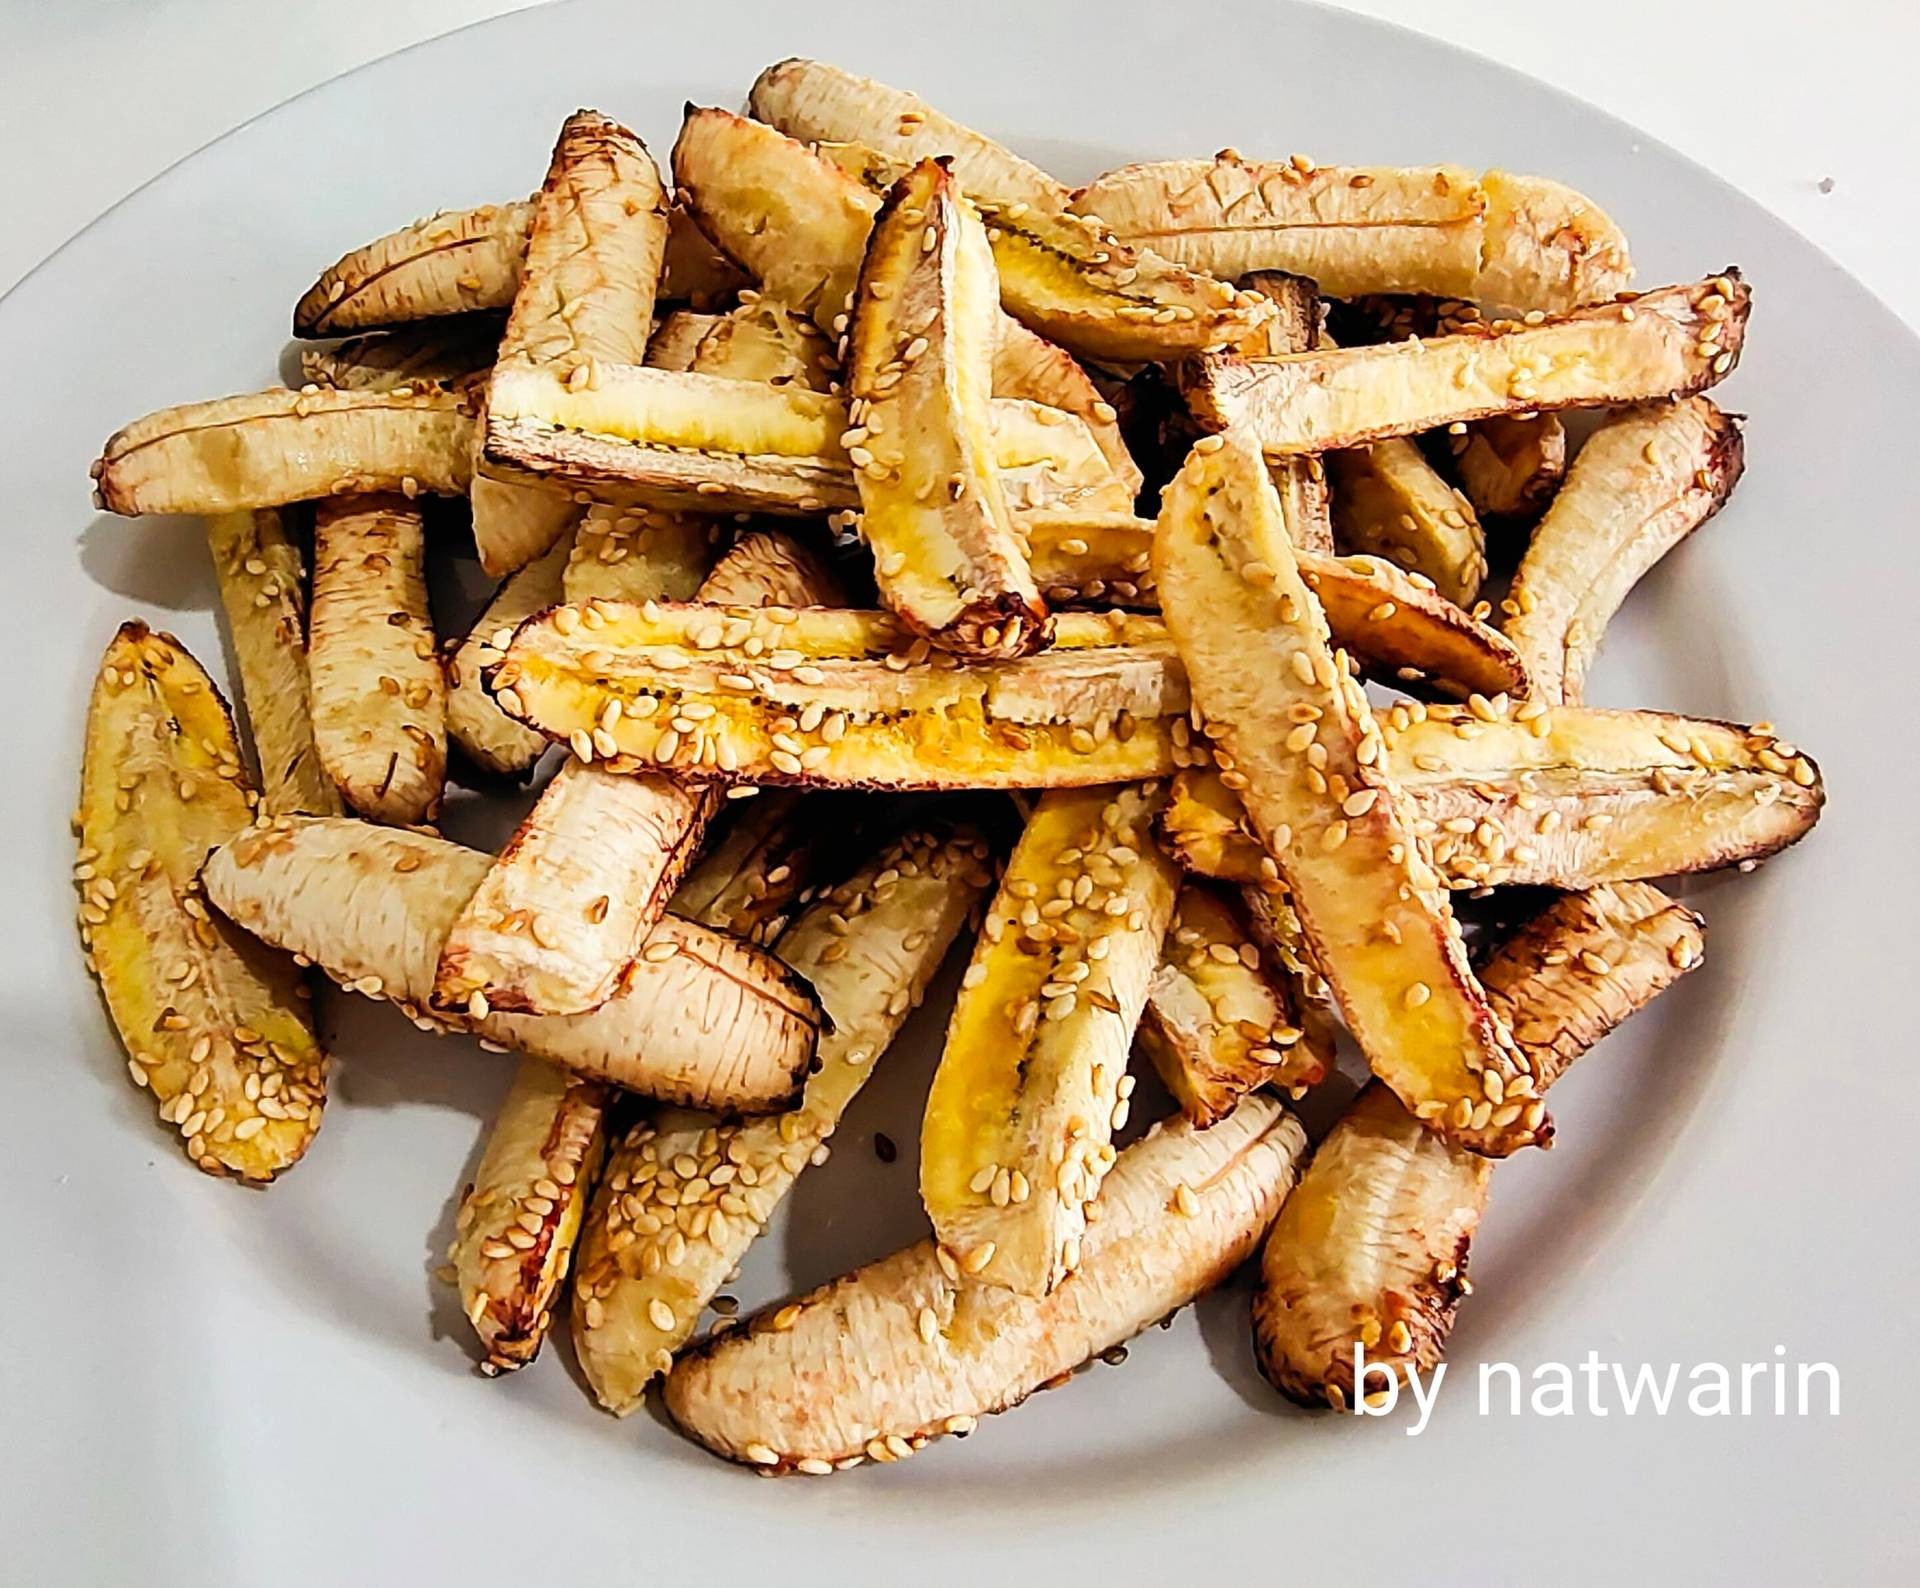 " เมนู Baked banana กล้วยอบ(น้ำผึ้ง+งาขาว) " เมนูอาหารว่าง